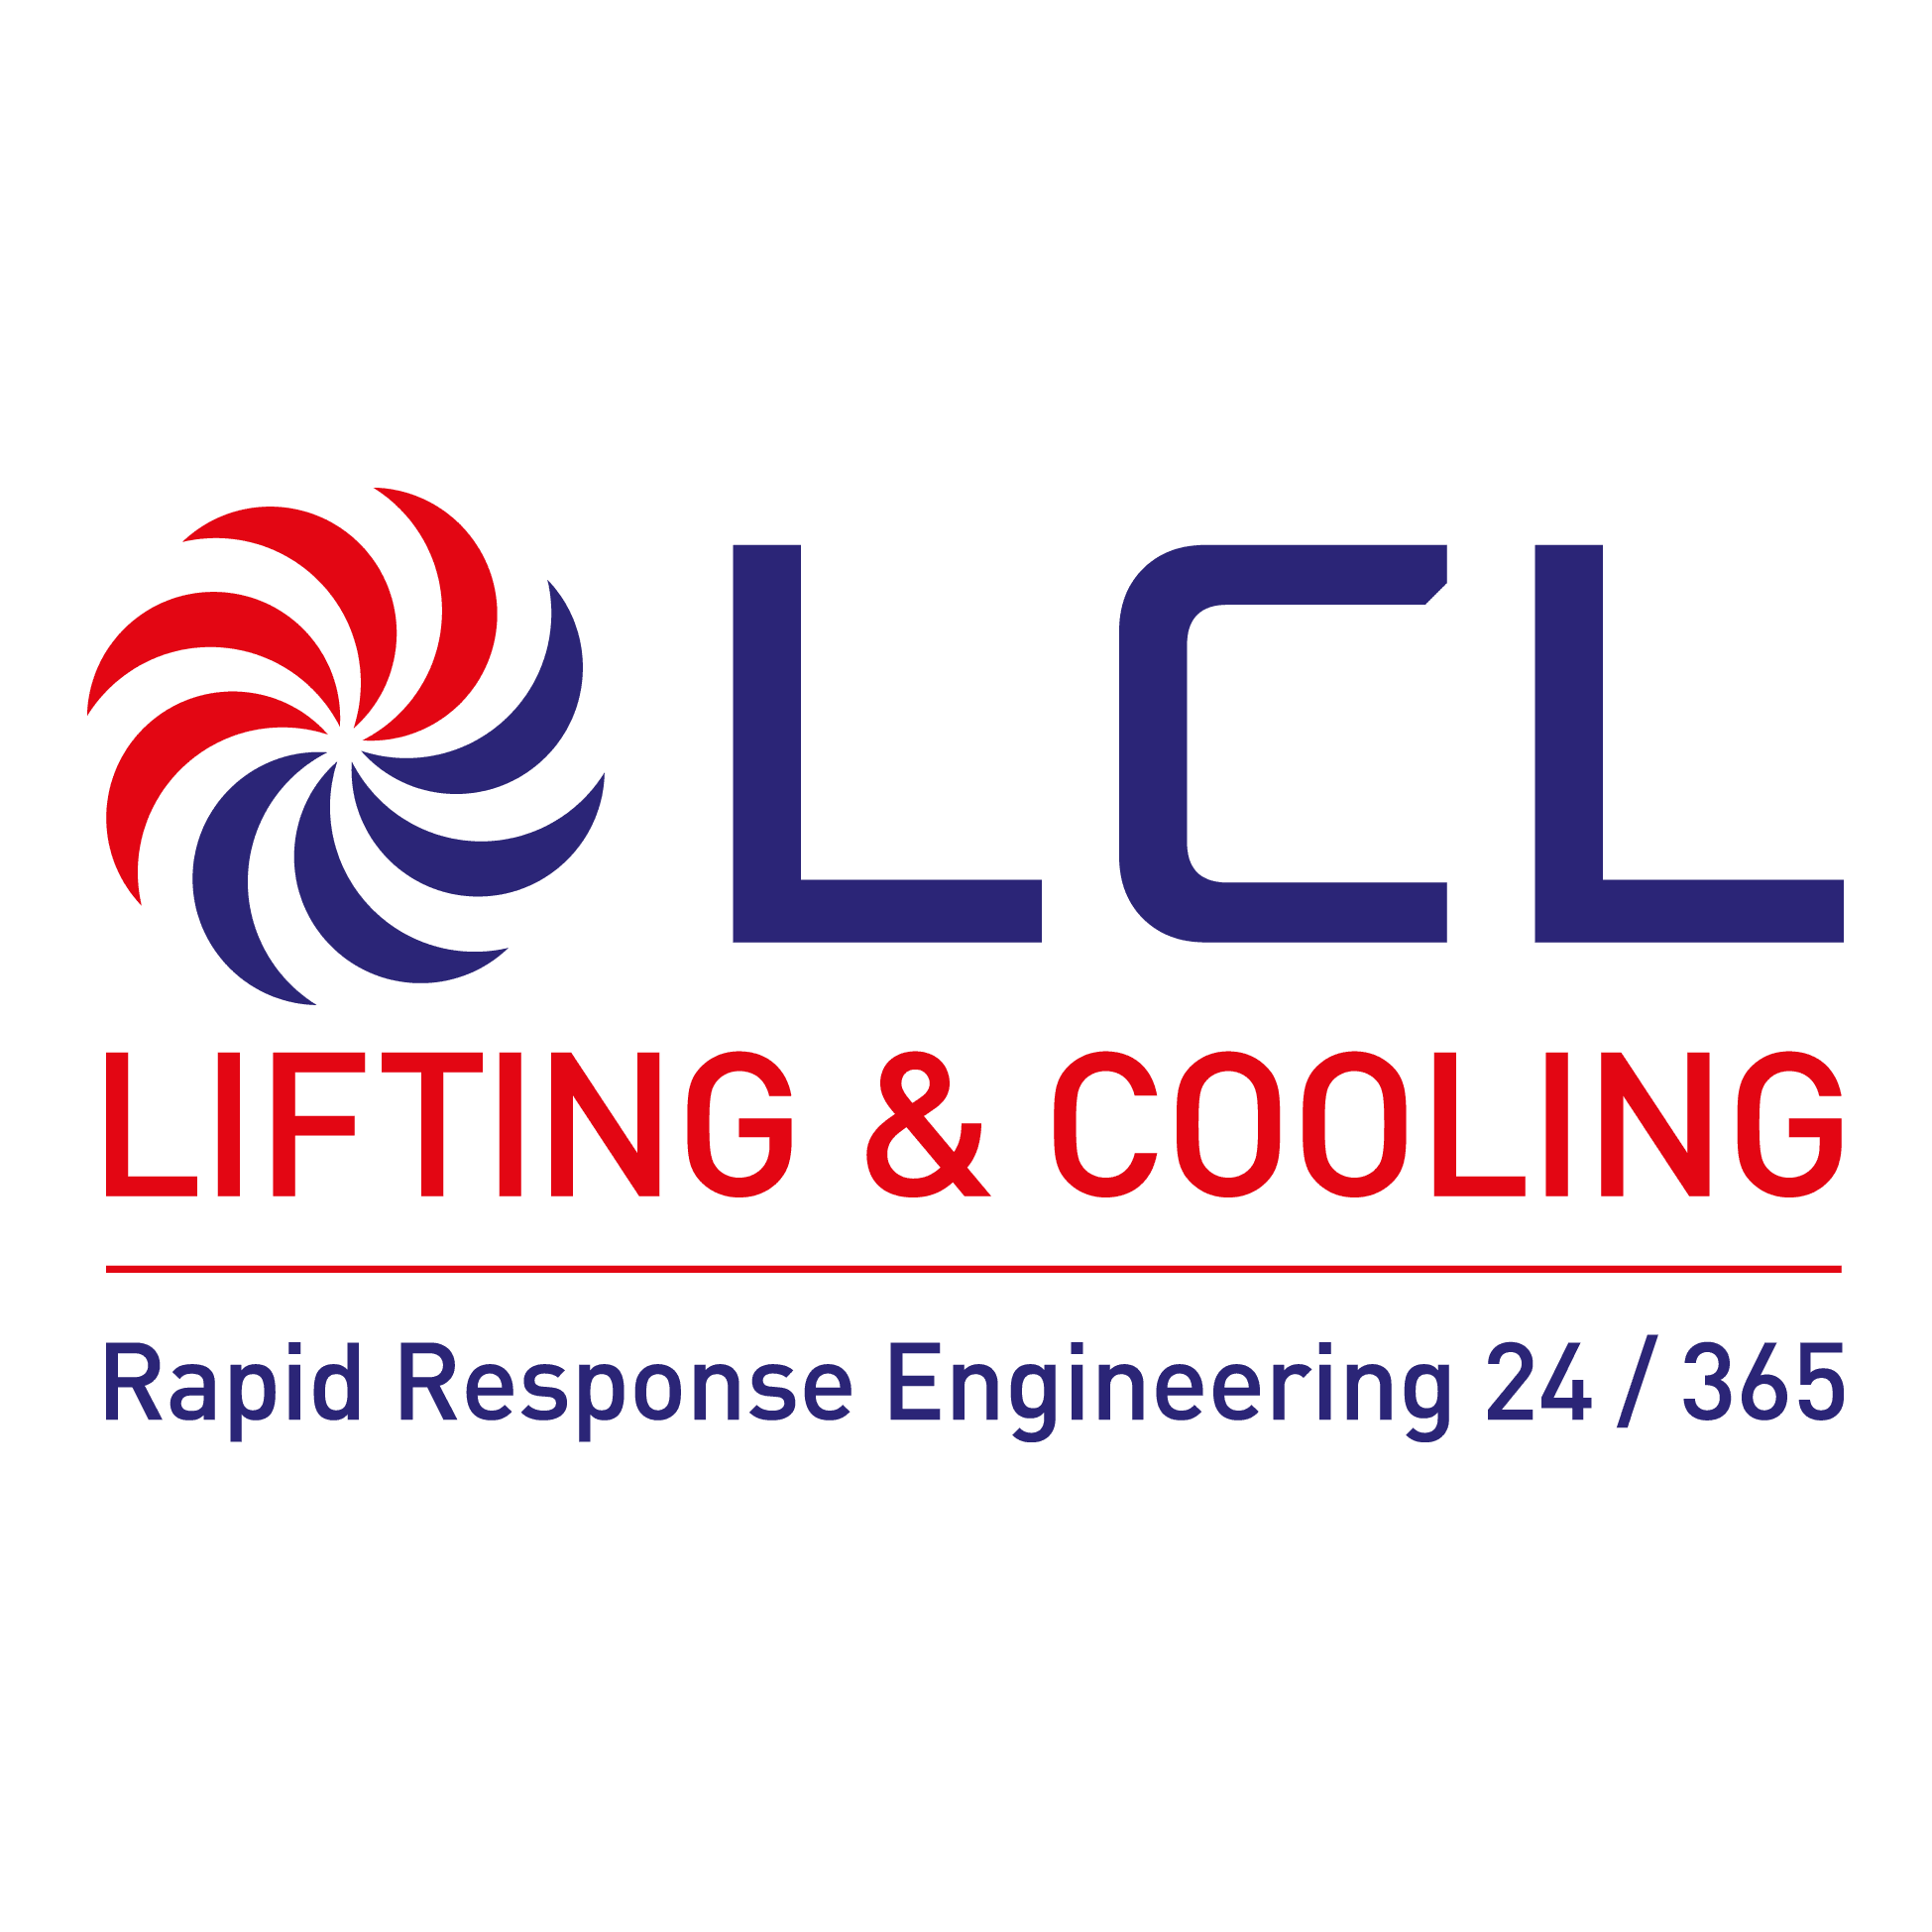 LOGO Lifting & Cooling Ltd Durham 01913 779777